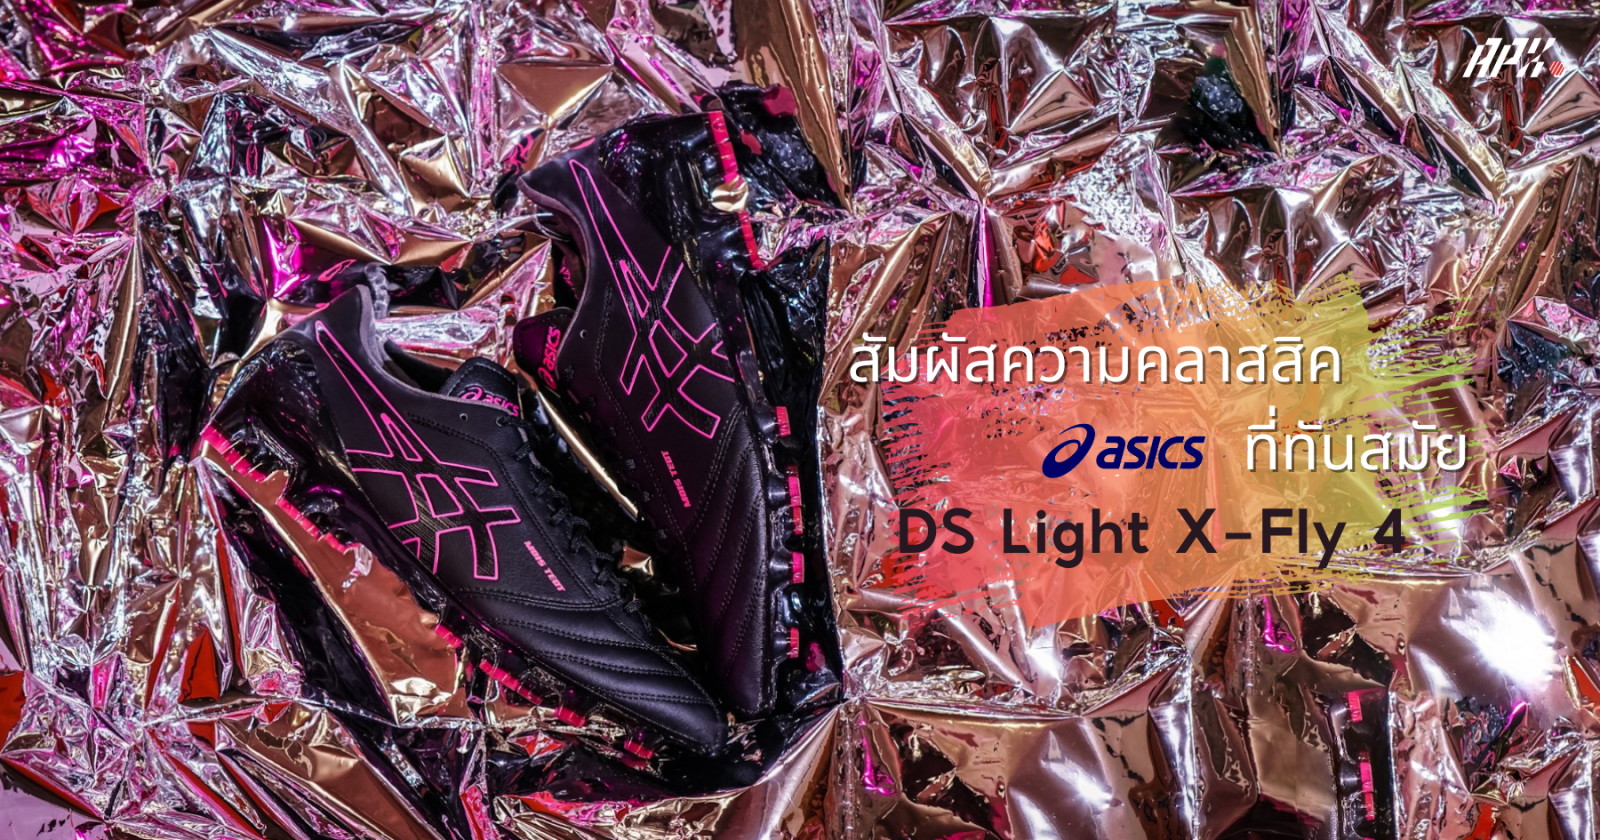 ส มผ สความคลาสส คท ท นสม ย ก บ Asics Ds Light X Fly 4 Apx Official Store